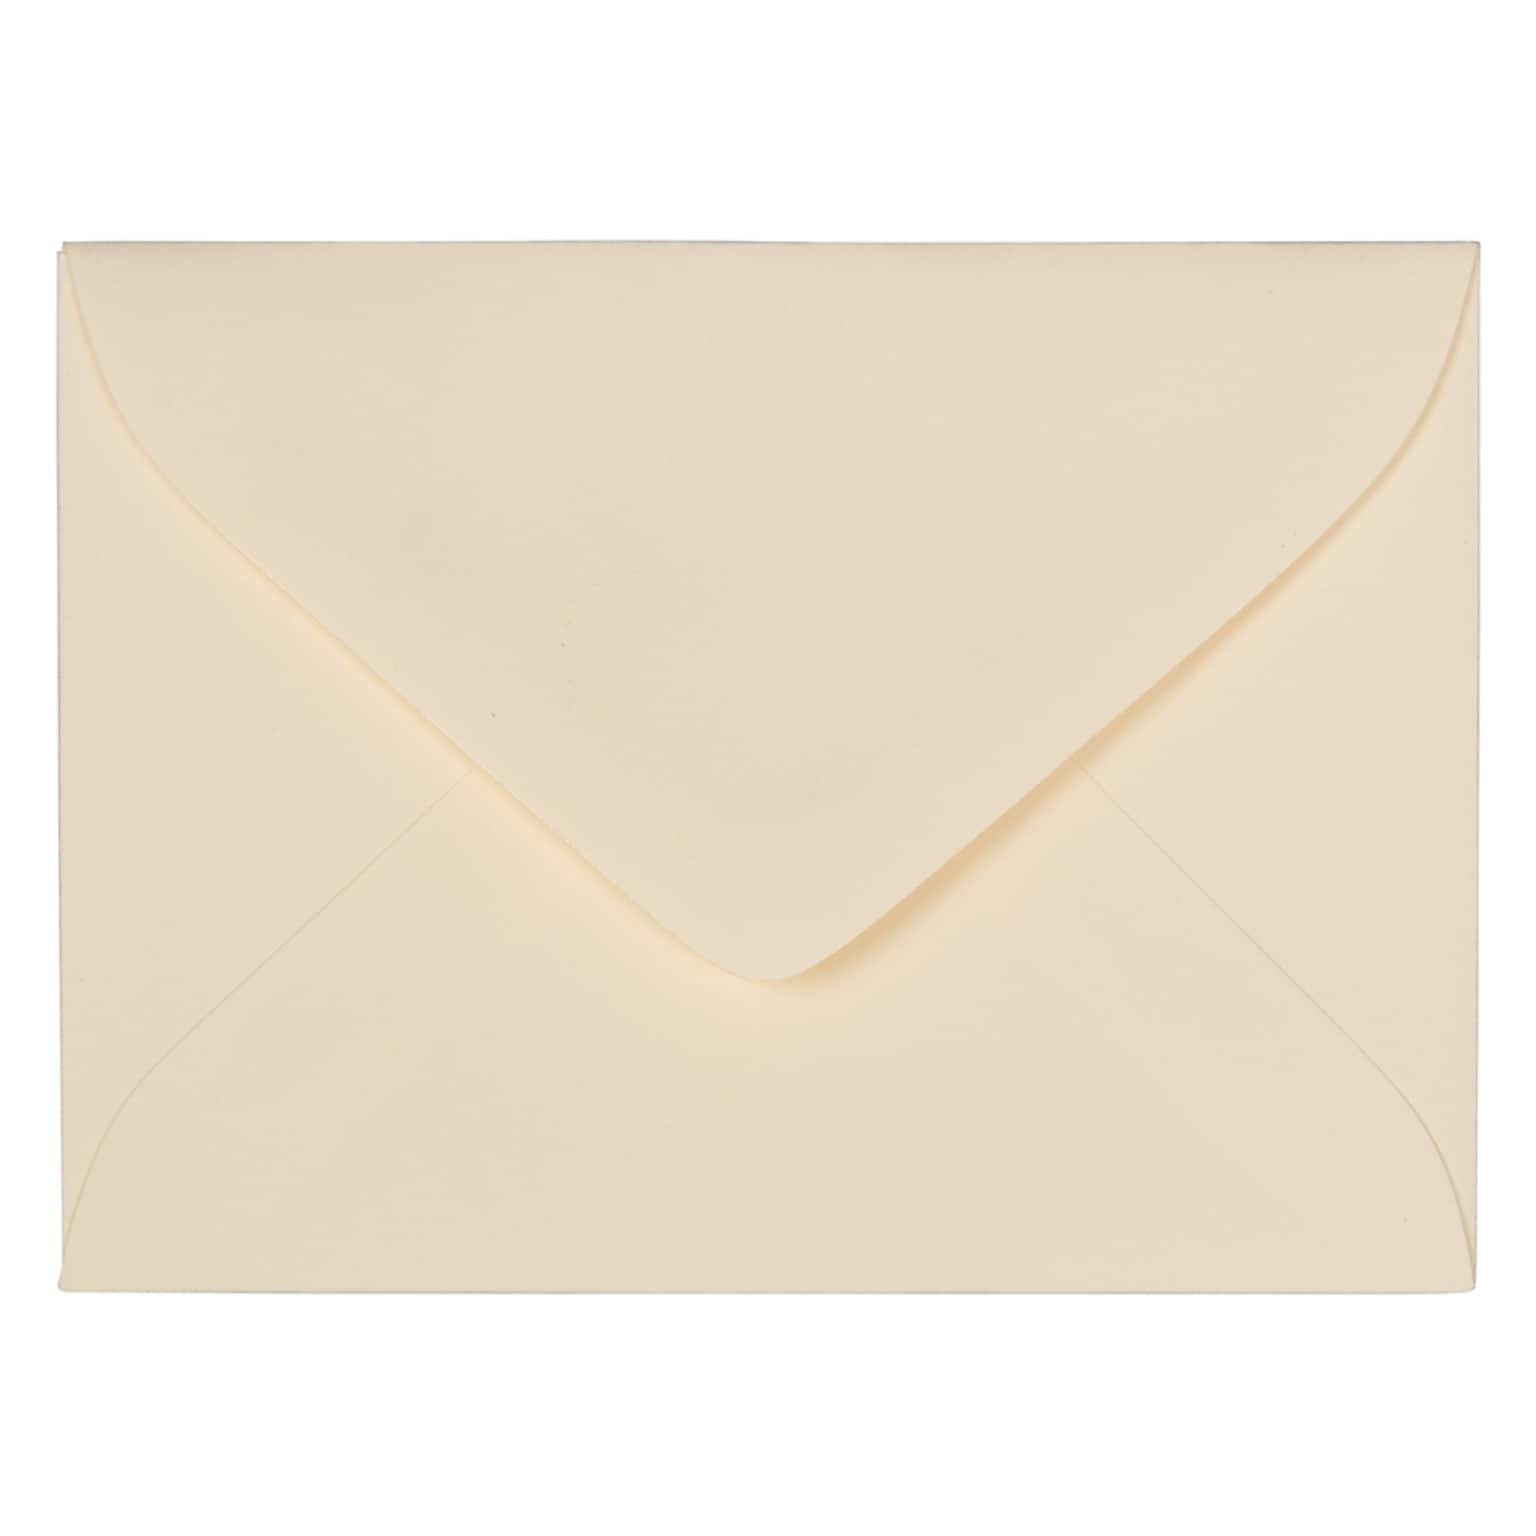 JAM Paper 2.75 x 3.75 Mini Commercial Envelopes, Ivory, 25/Pack (201244)